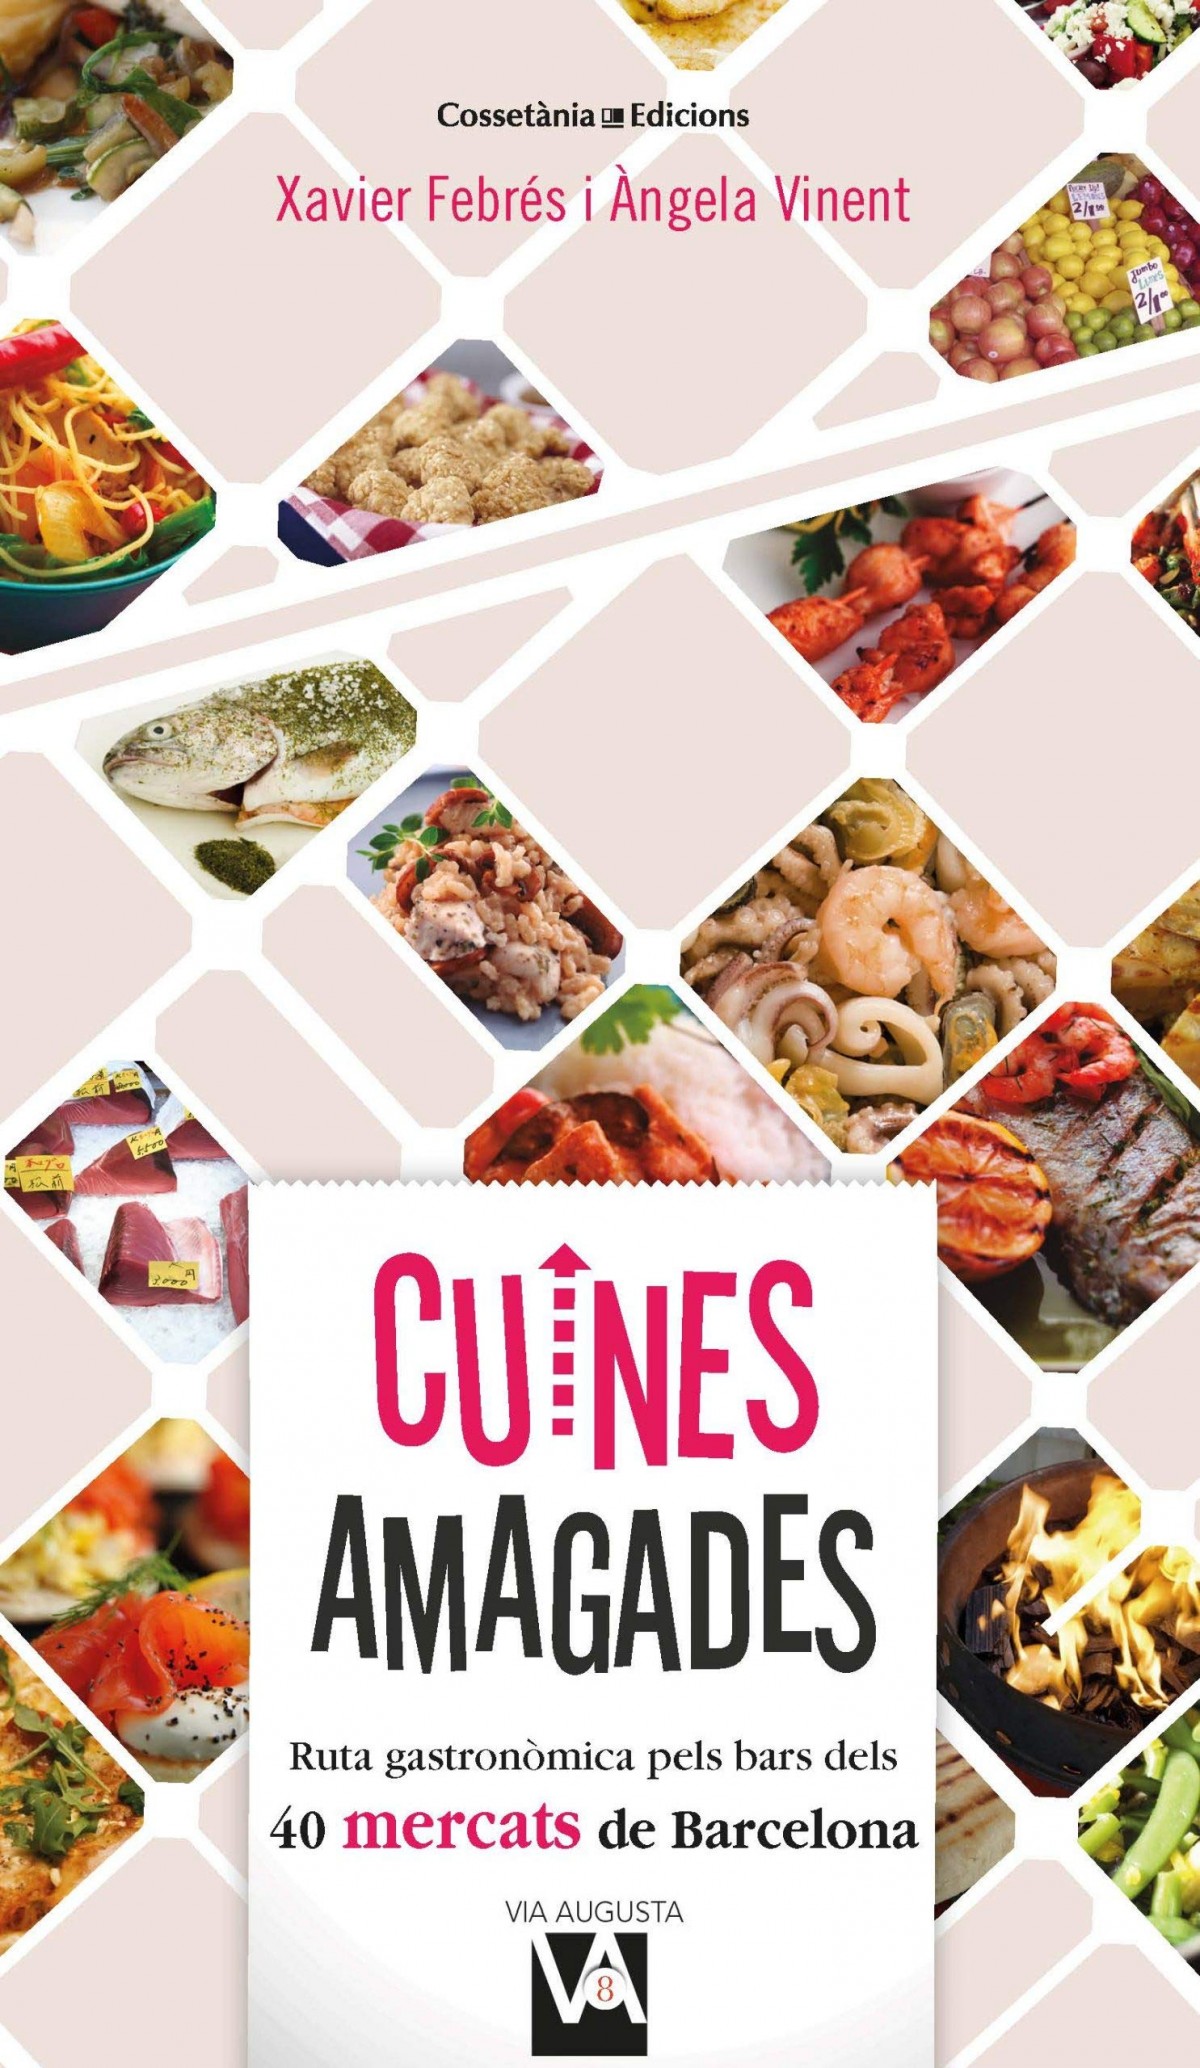 Cuines Lliri Granollers - Se vende cocina de exposición. Conjunto